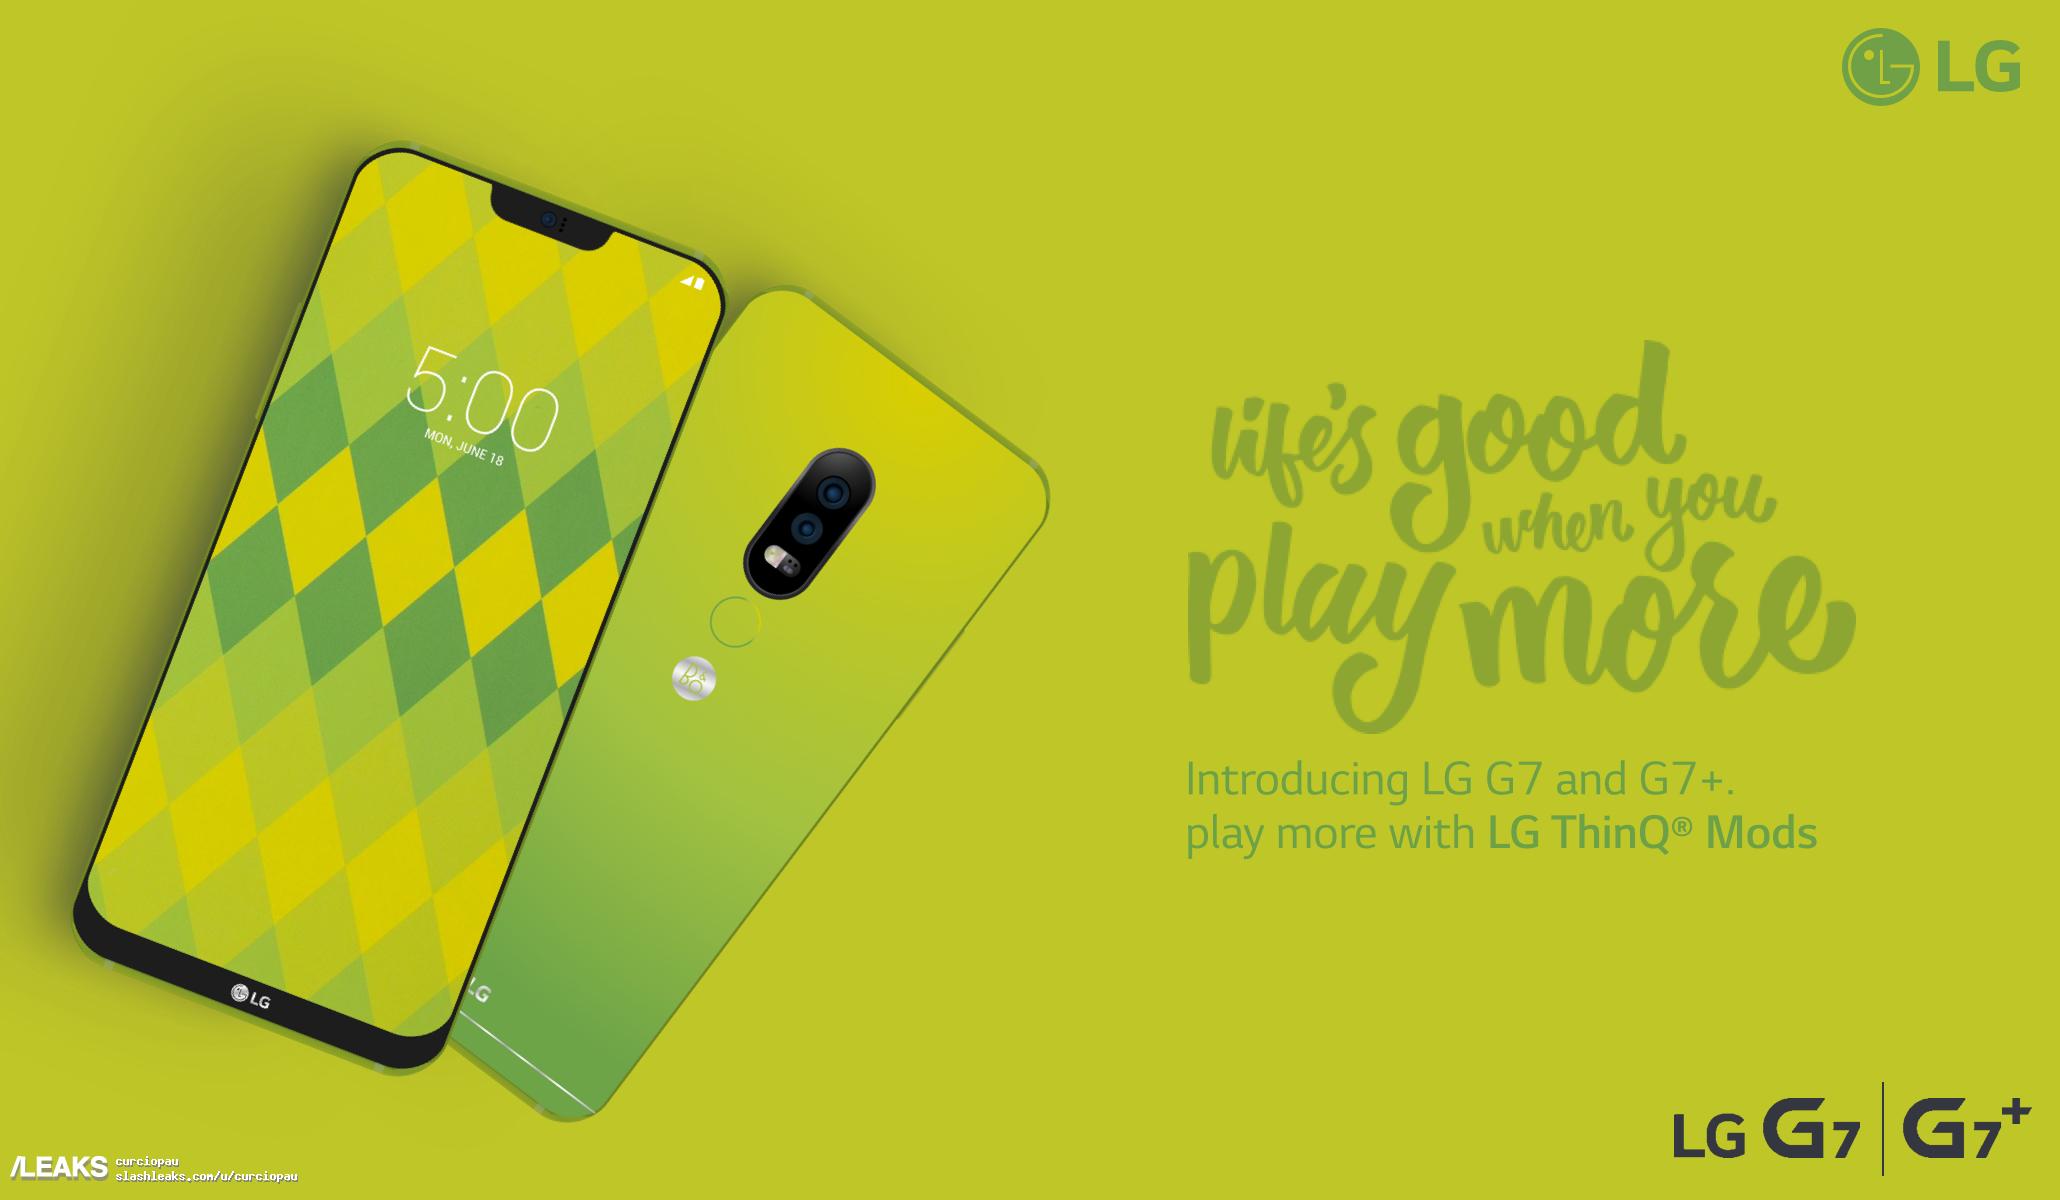 Una imagen promocional nos muestra el diseño del LG G7